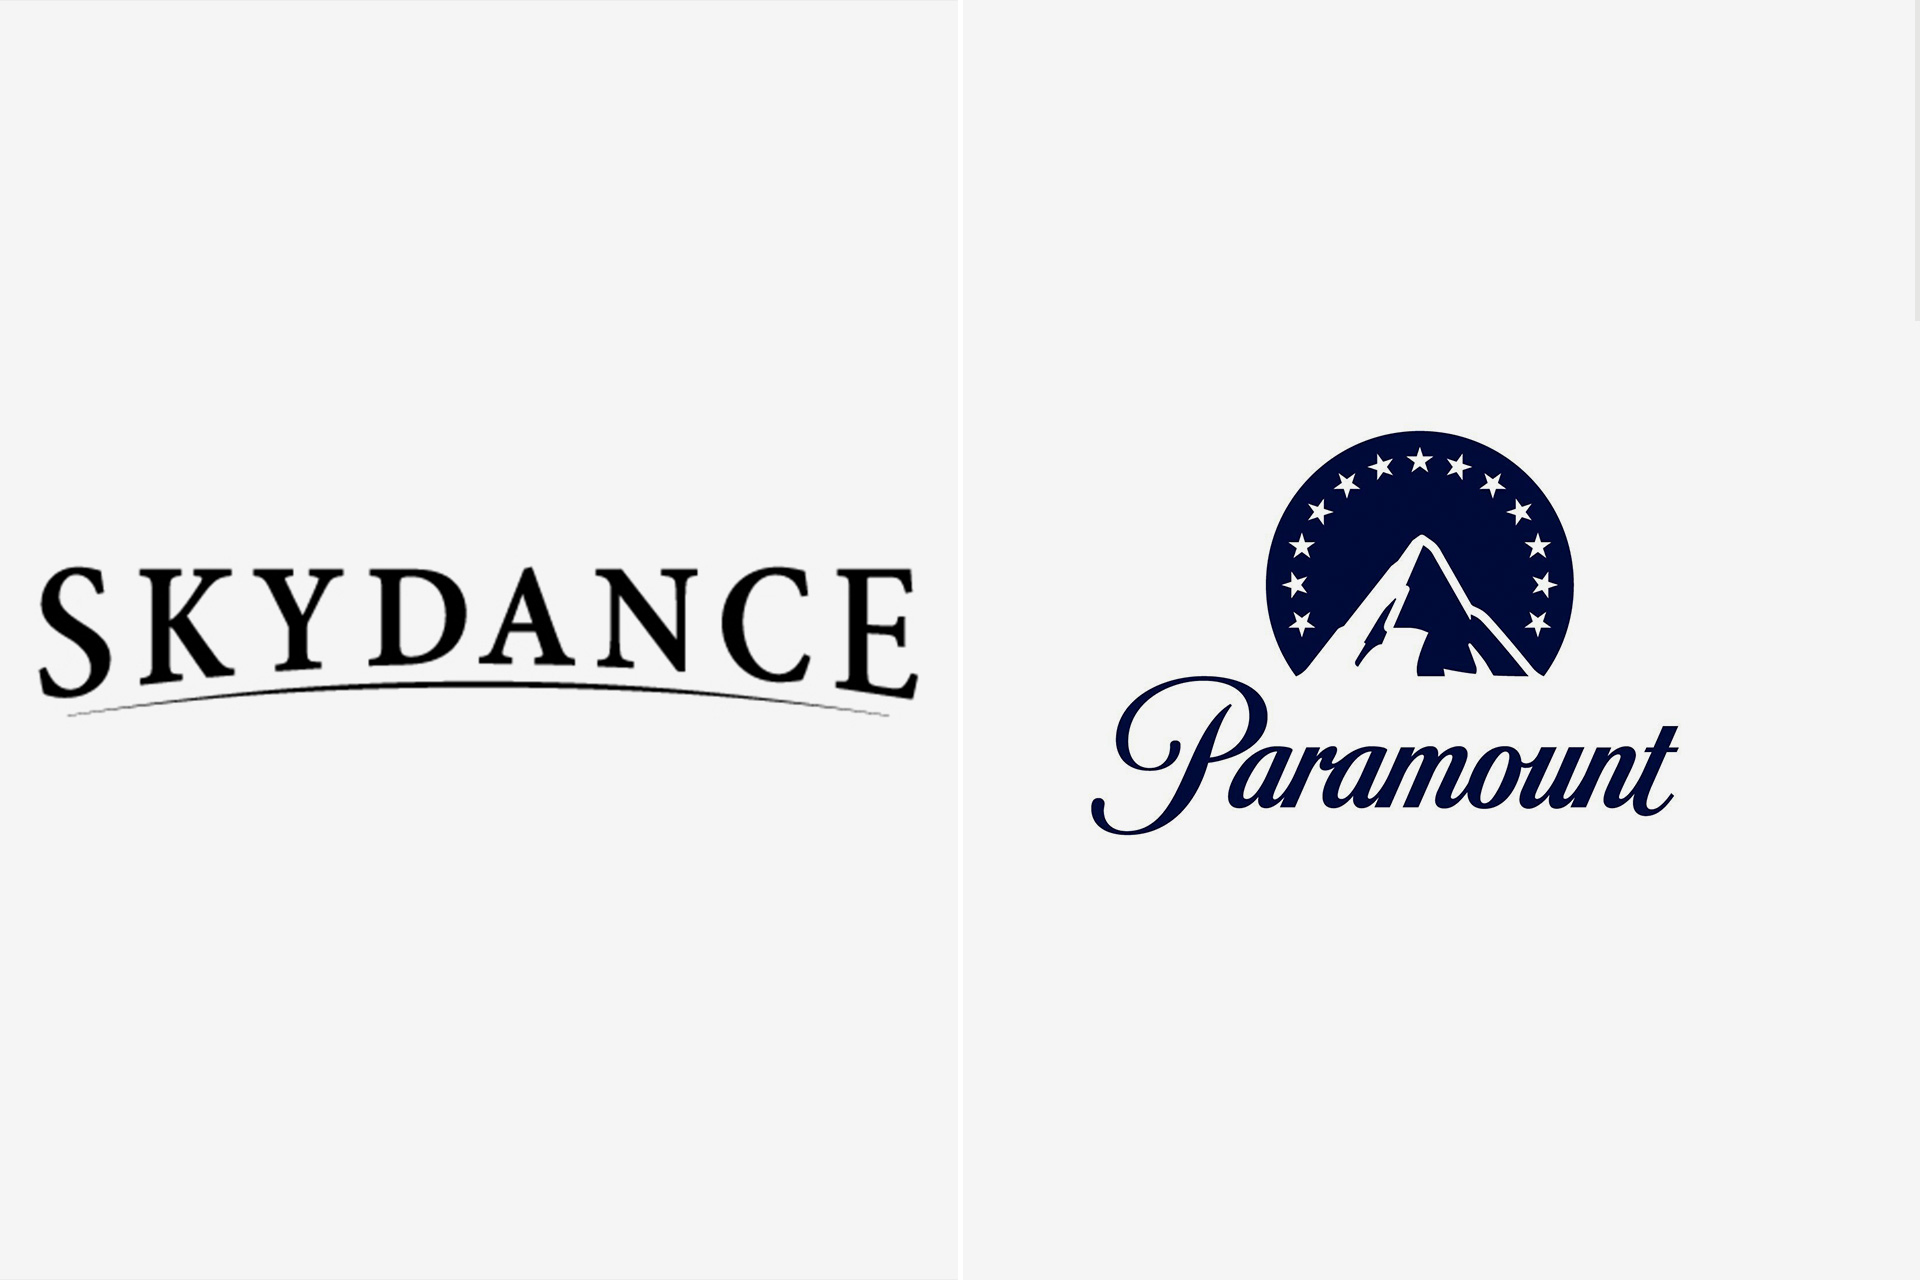 Paramount et Sky Dance négocient une fusion gigantesque